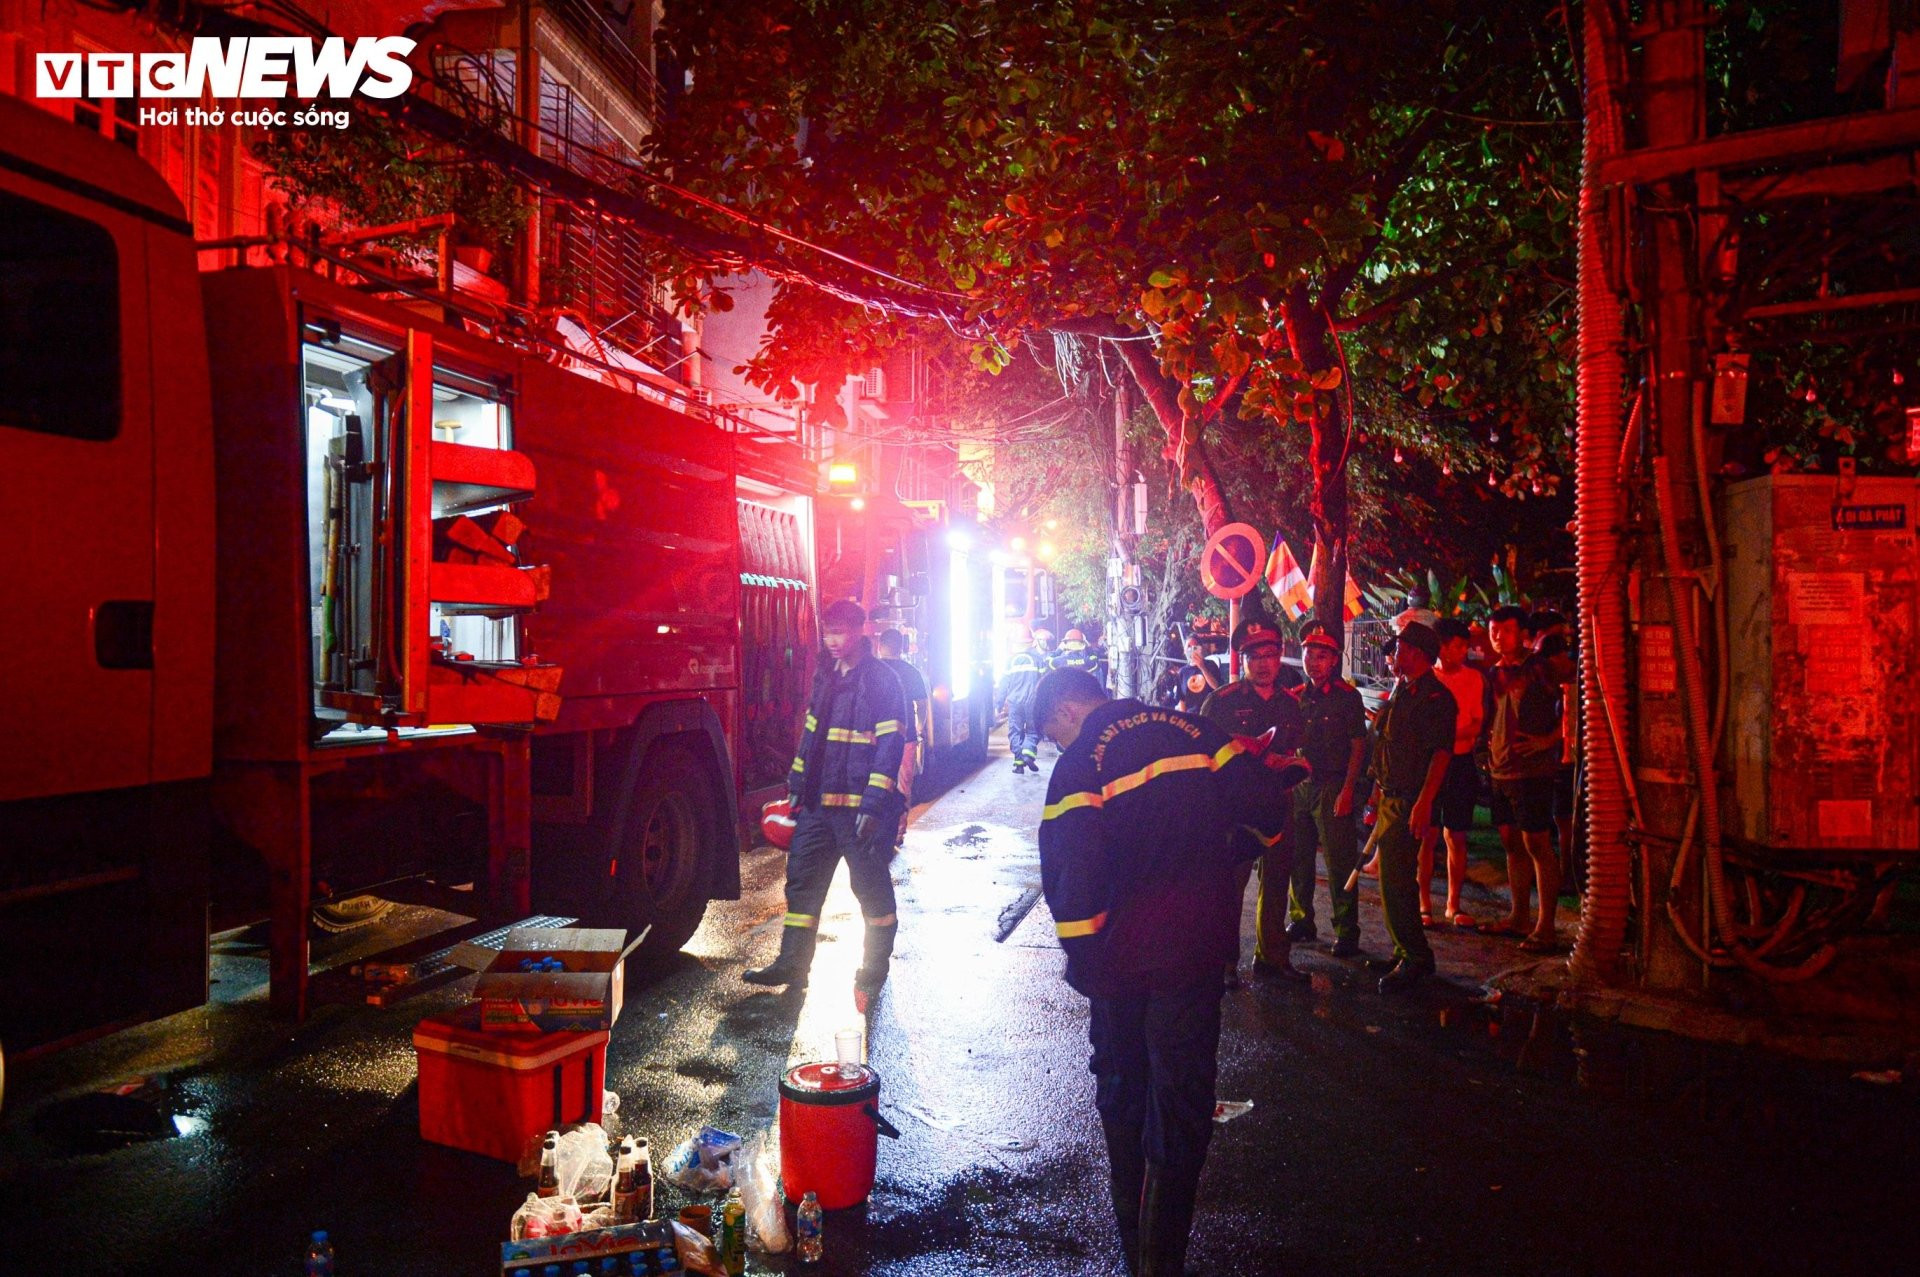 Hiện trường vụ cháy chung cư mini ở Hà Nội trong đêm, nhiều người ngất xỉu - 2